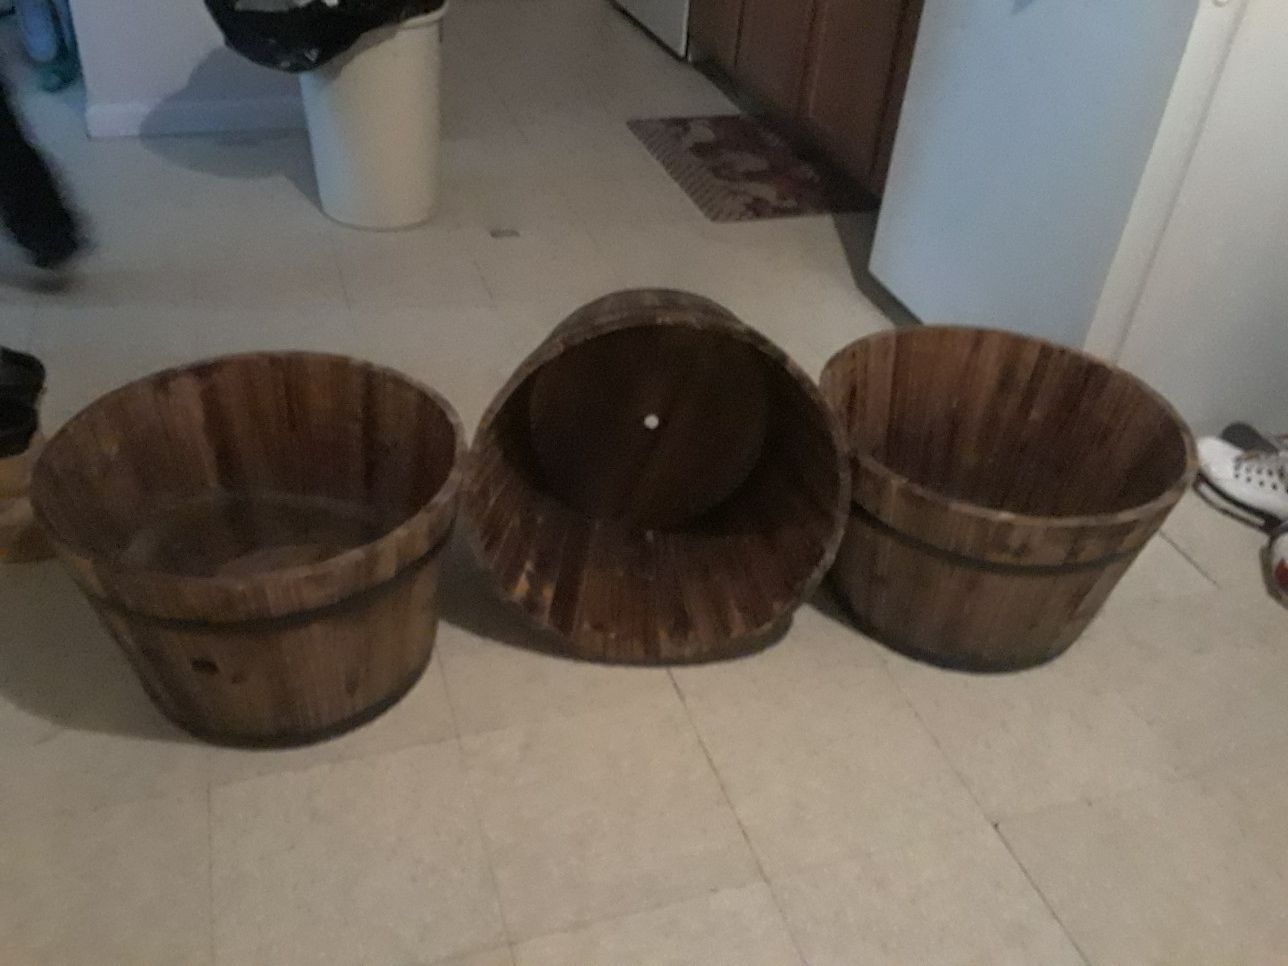 Plant barrels